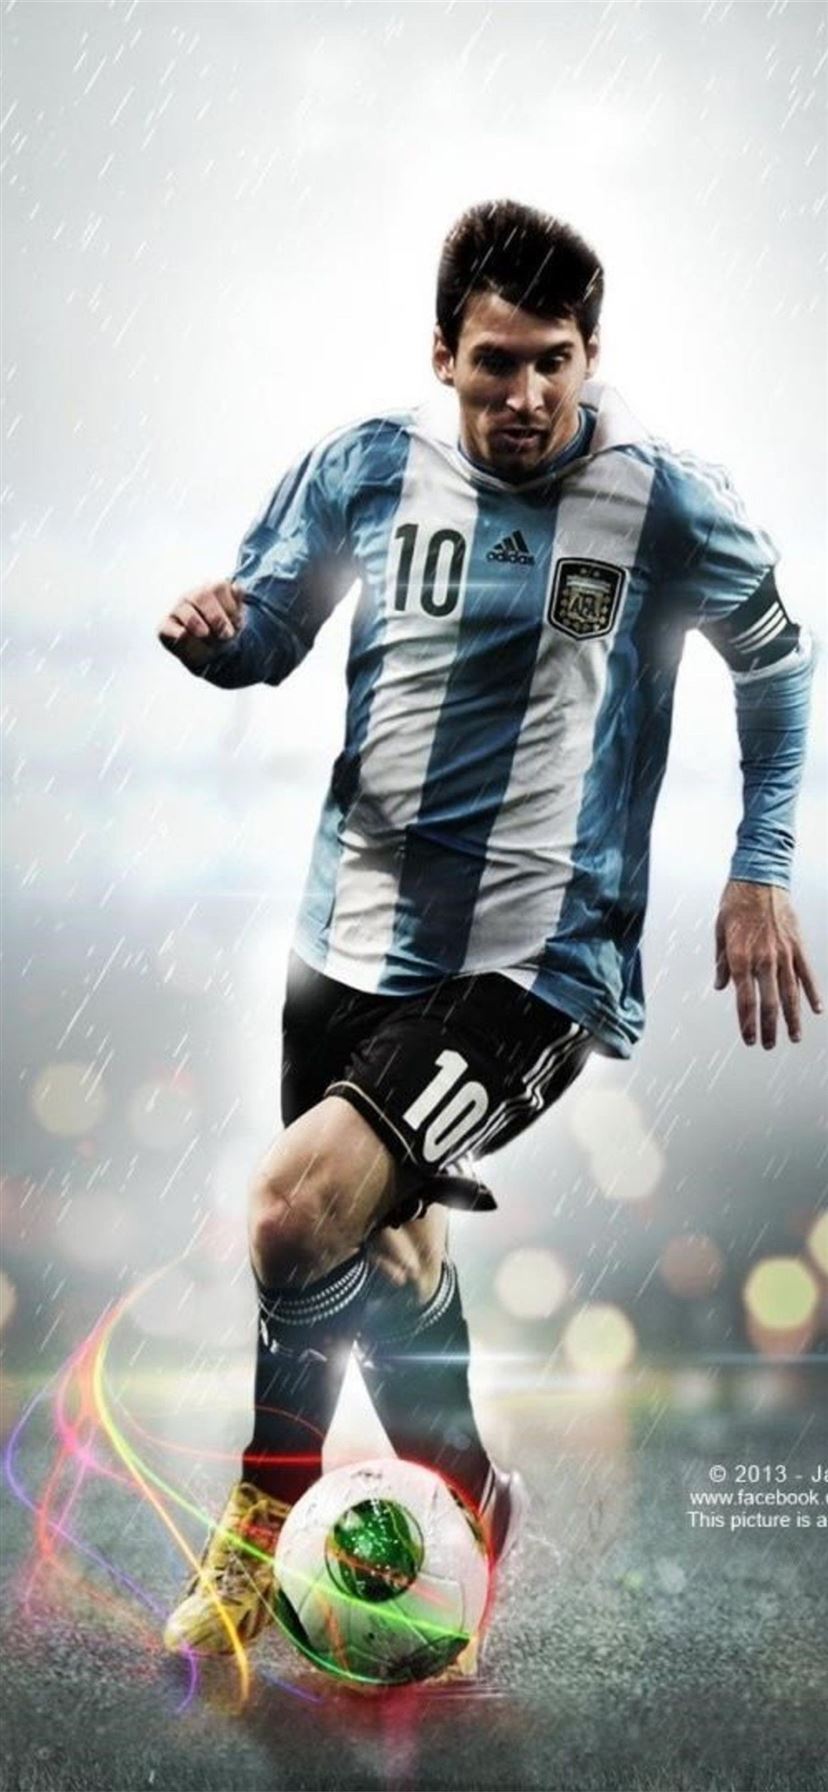 Khám phá bức ảnh 4K Messi Fifa 2022 wallpaper độc nhất vô nhị này! Đây là lựa chọn hoàn hảo cho những người yêu thích Messi và quan tâm đến trò chơi bóng đá mới nhất sắp ra mắt. Hãy tận hưởng chất lượng hình ảnh tuyệt đỉnh của bức ảnh này.